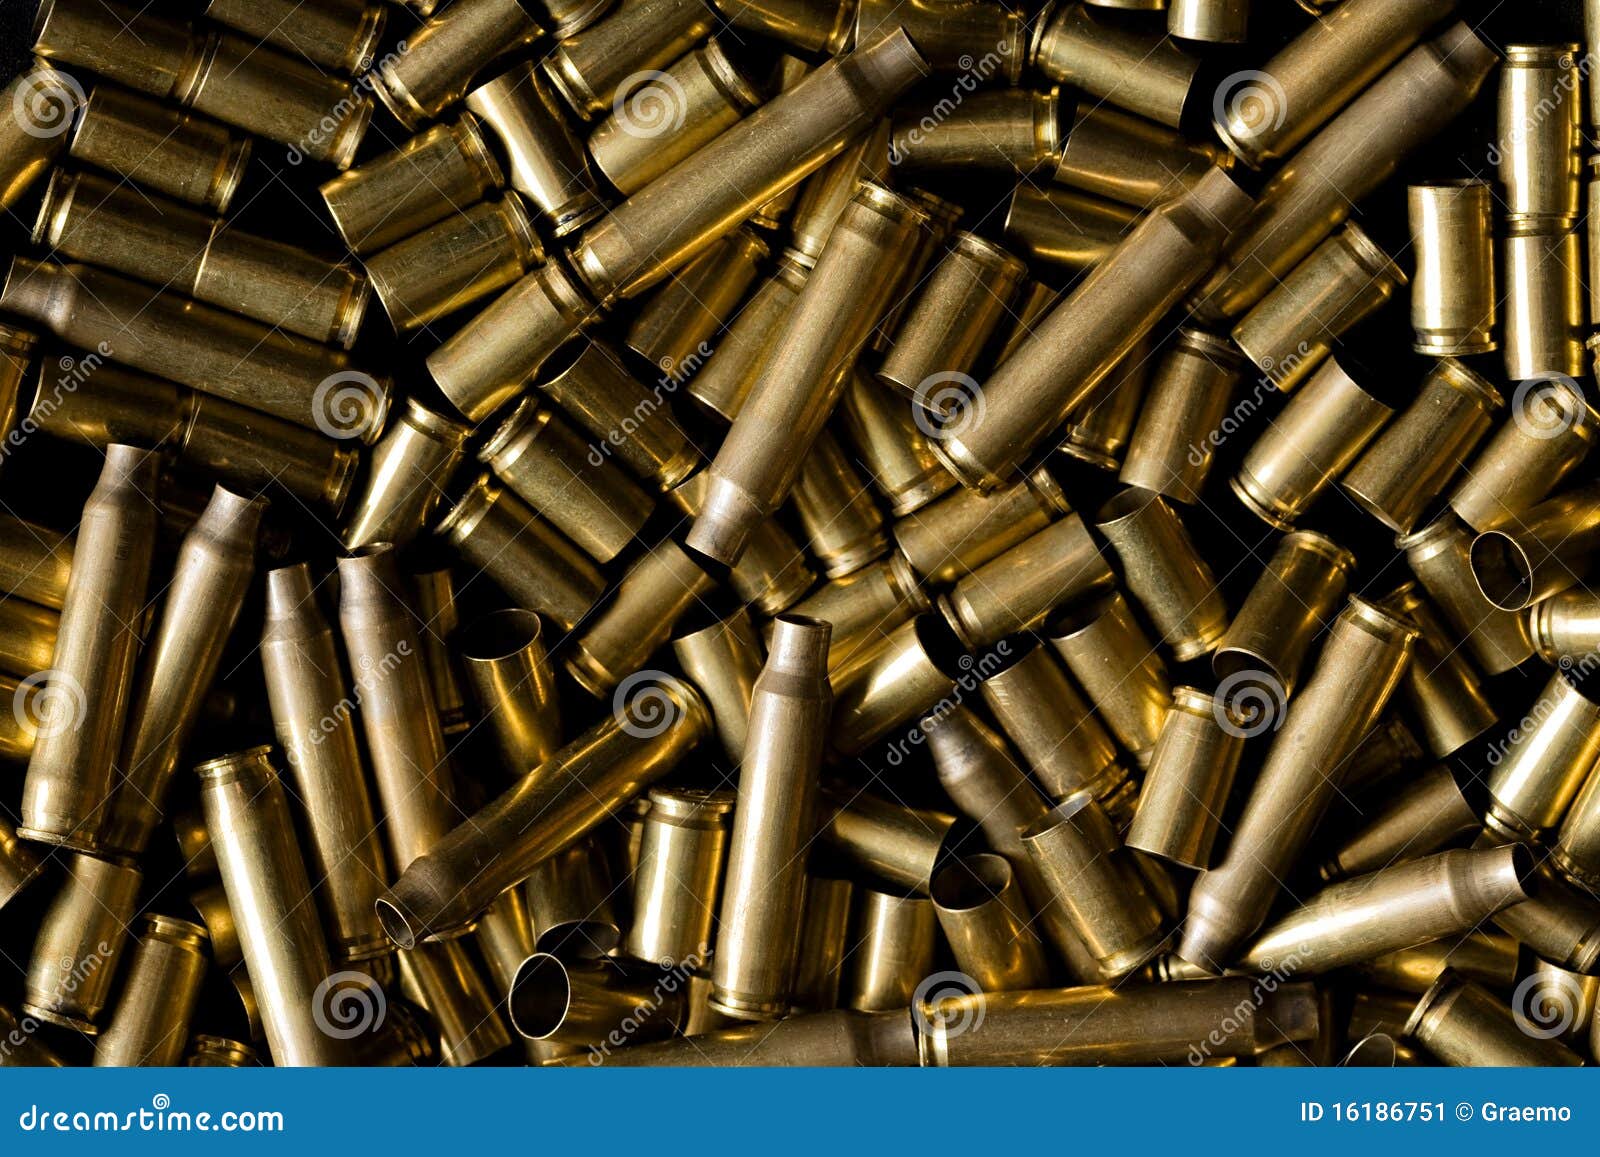 spent ammo casings